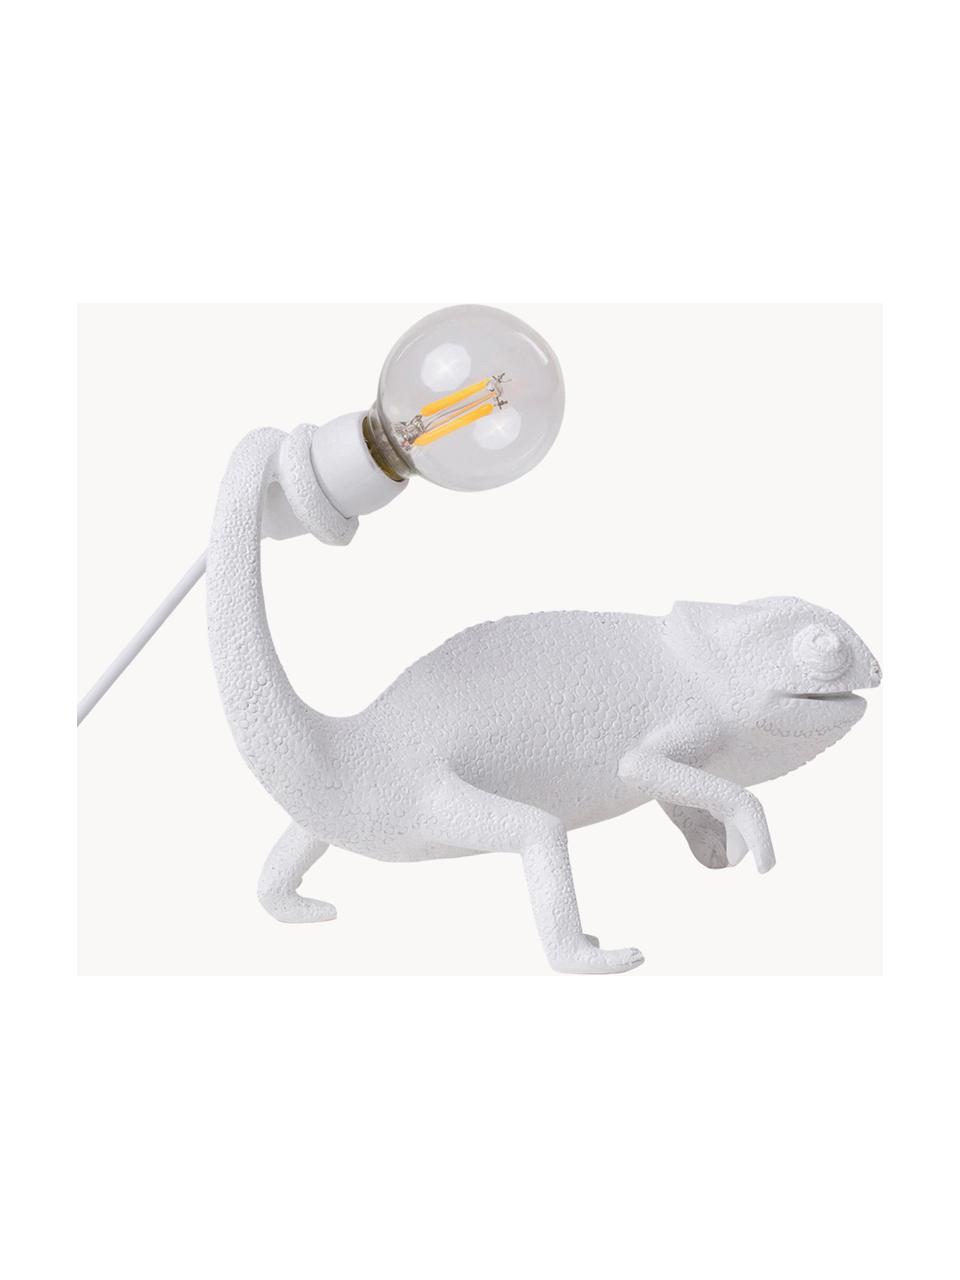 Kleine LED-Tischlampe Chameleon mit USB-Anschluss, Weiß, B 17 x H 14 cm